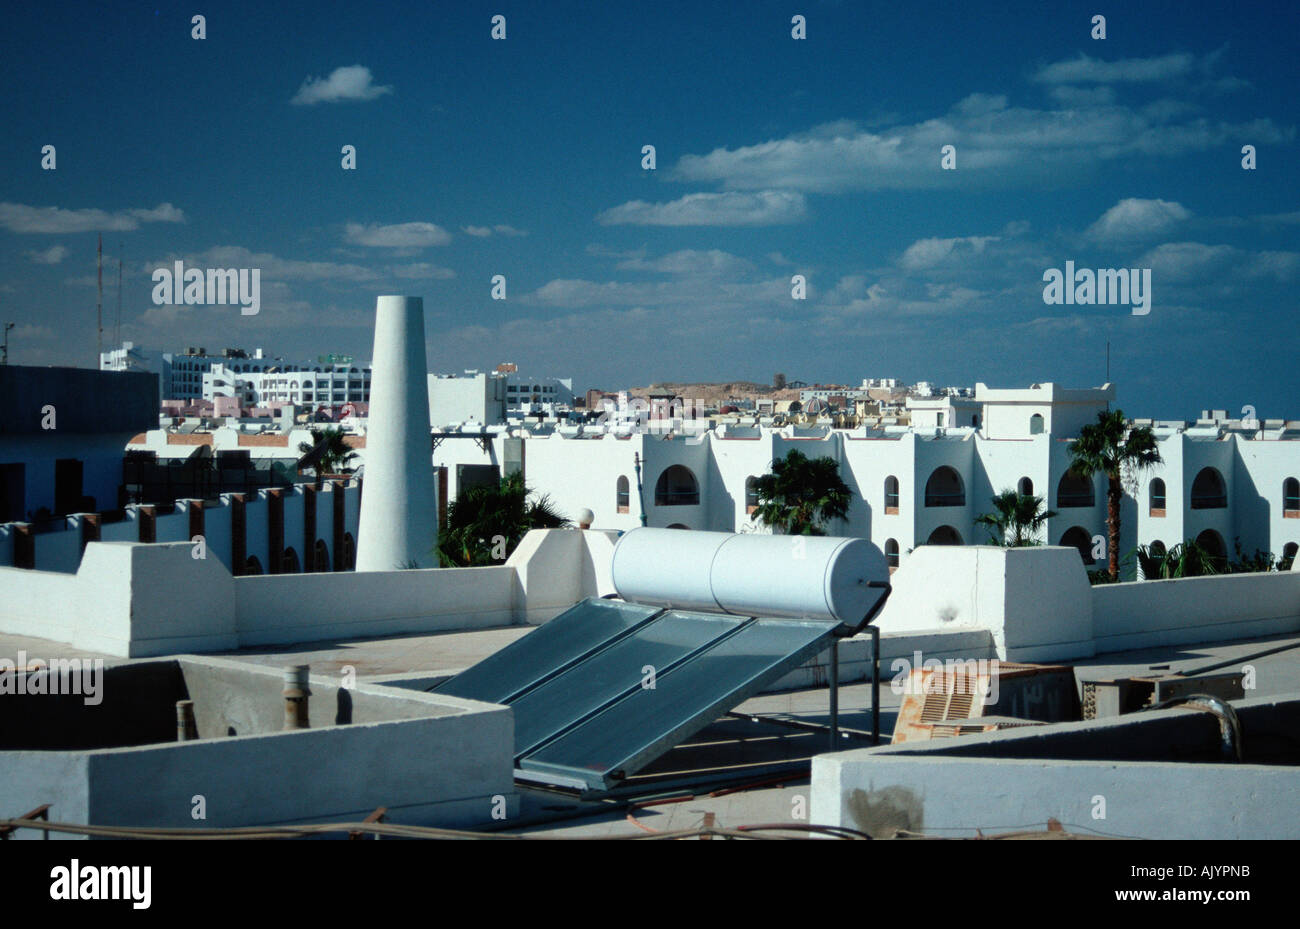 Pannelli solari sul tetto / Sonnenkollektor auf Dach Foto Stock